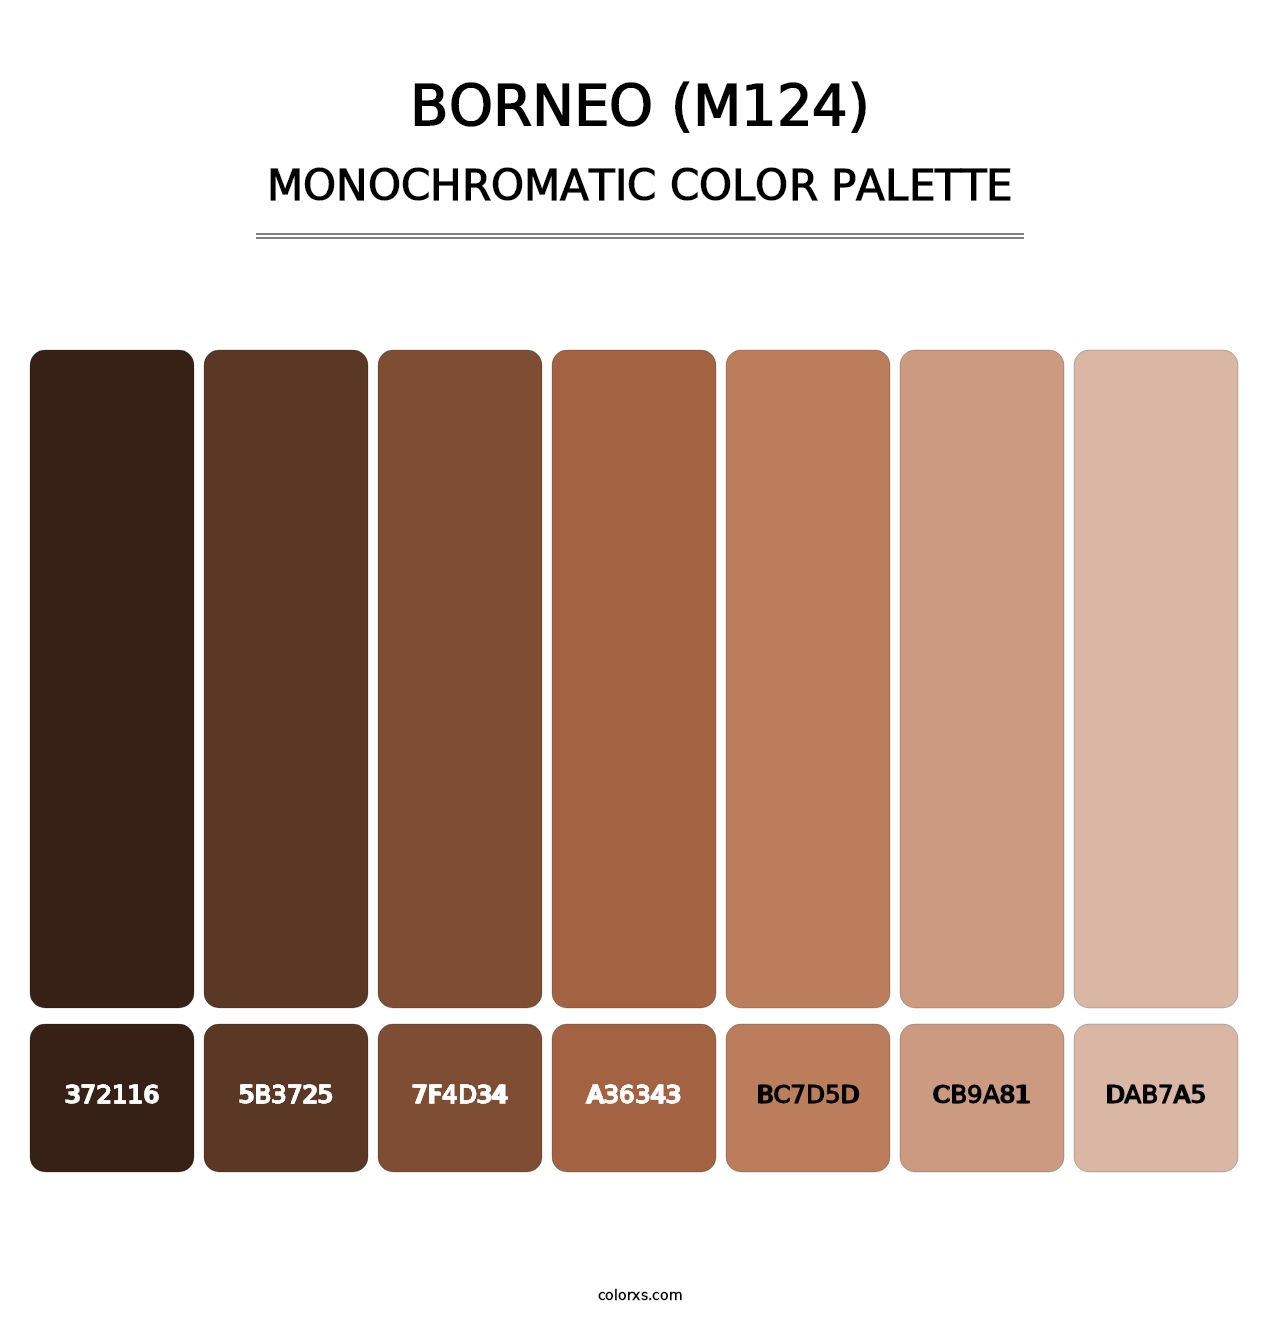 Borneo (M124) - Monochromatic Color Palette